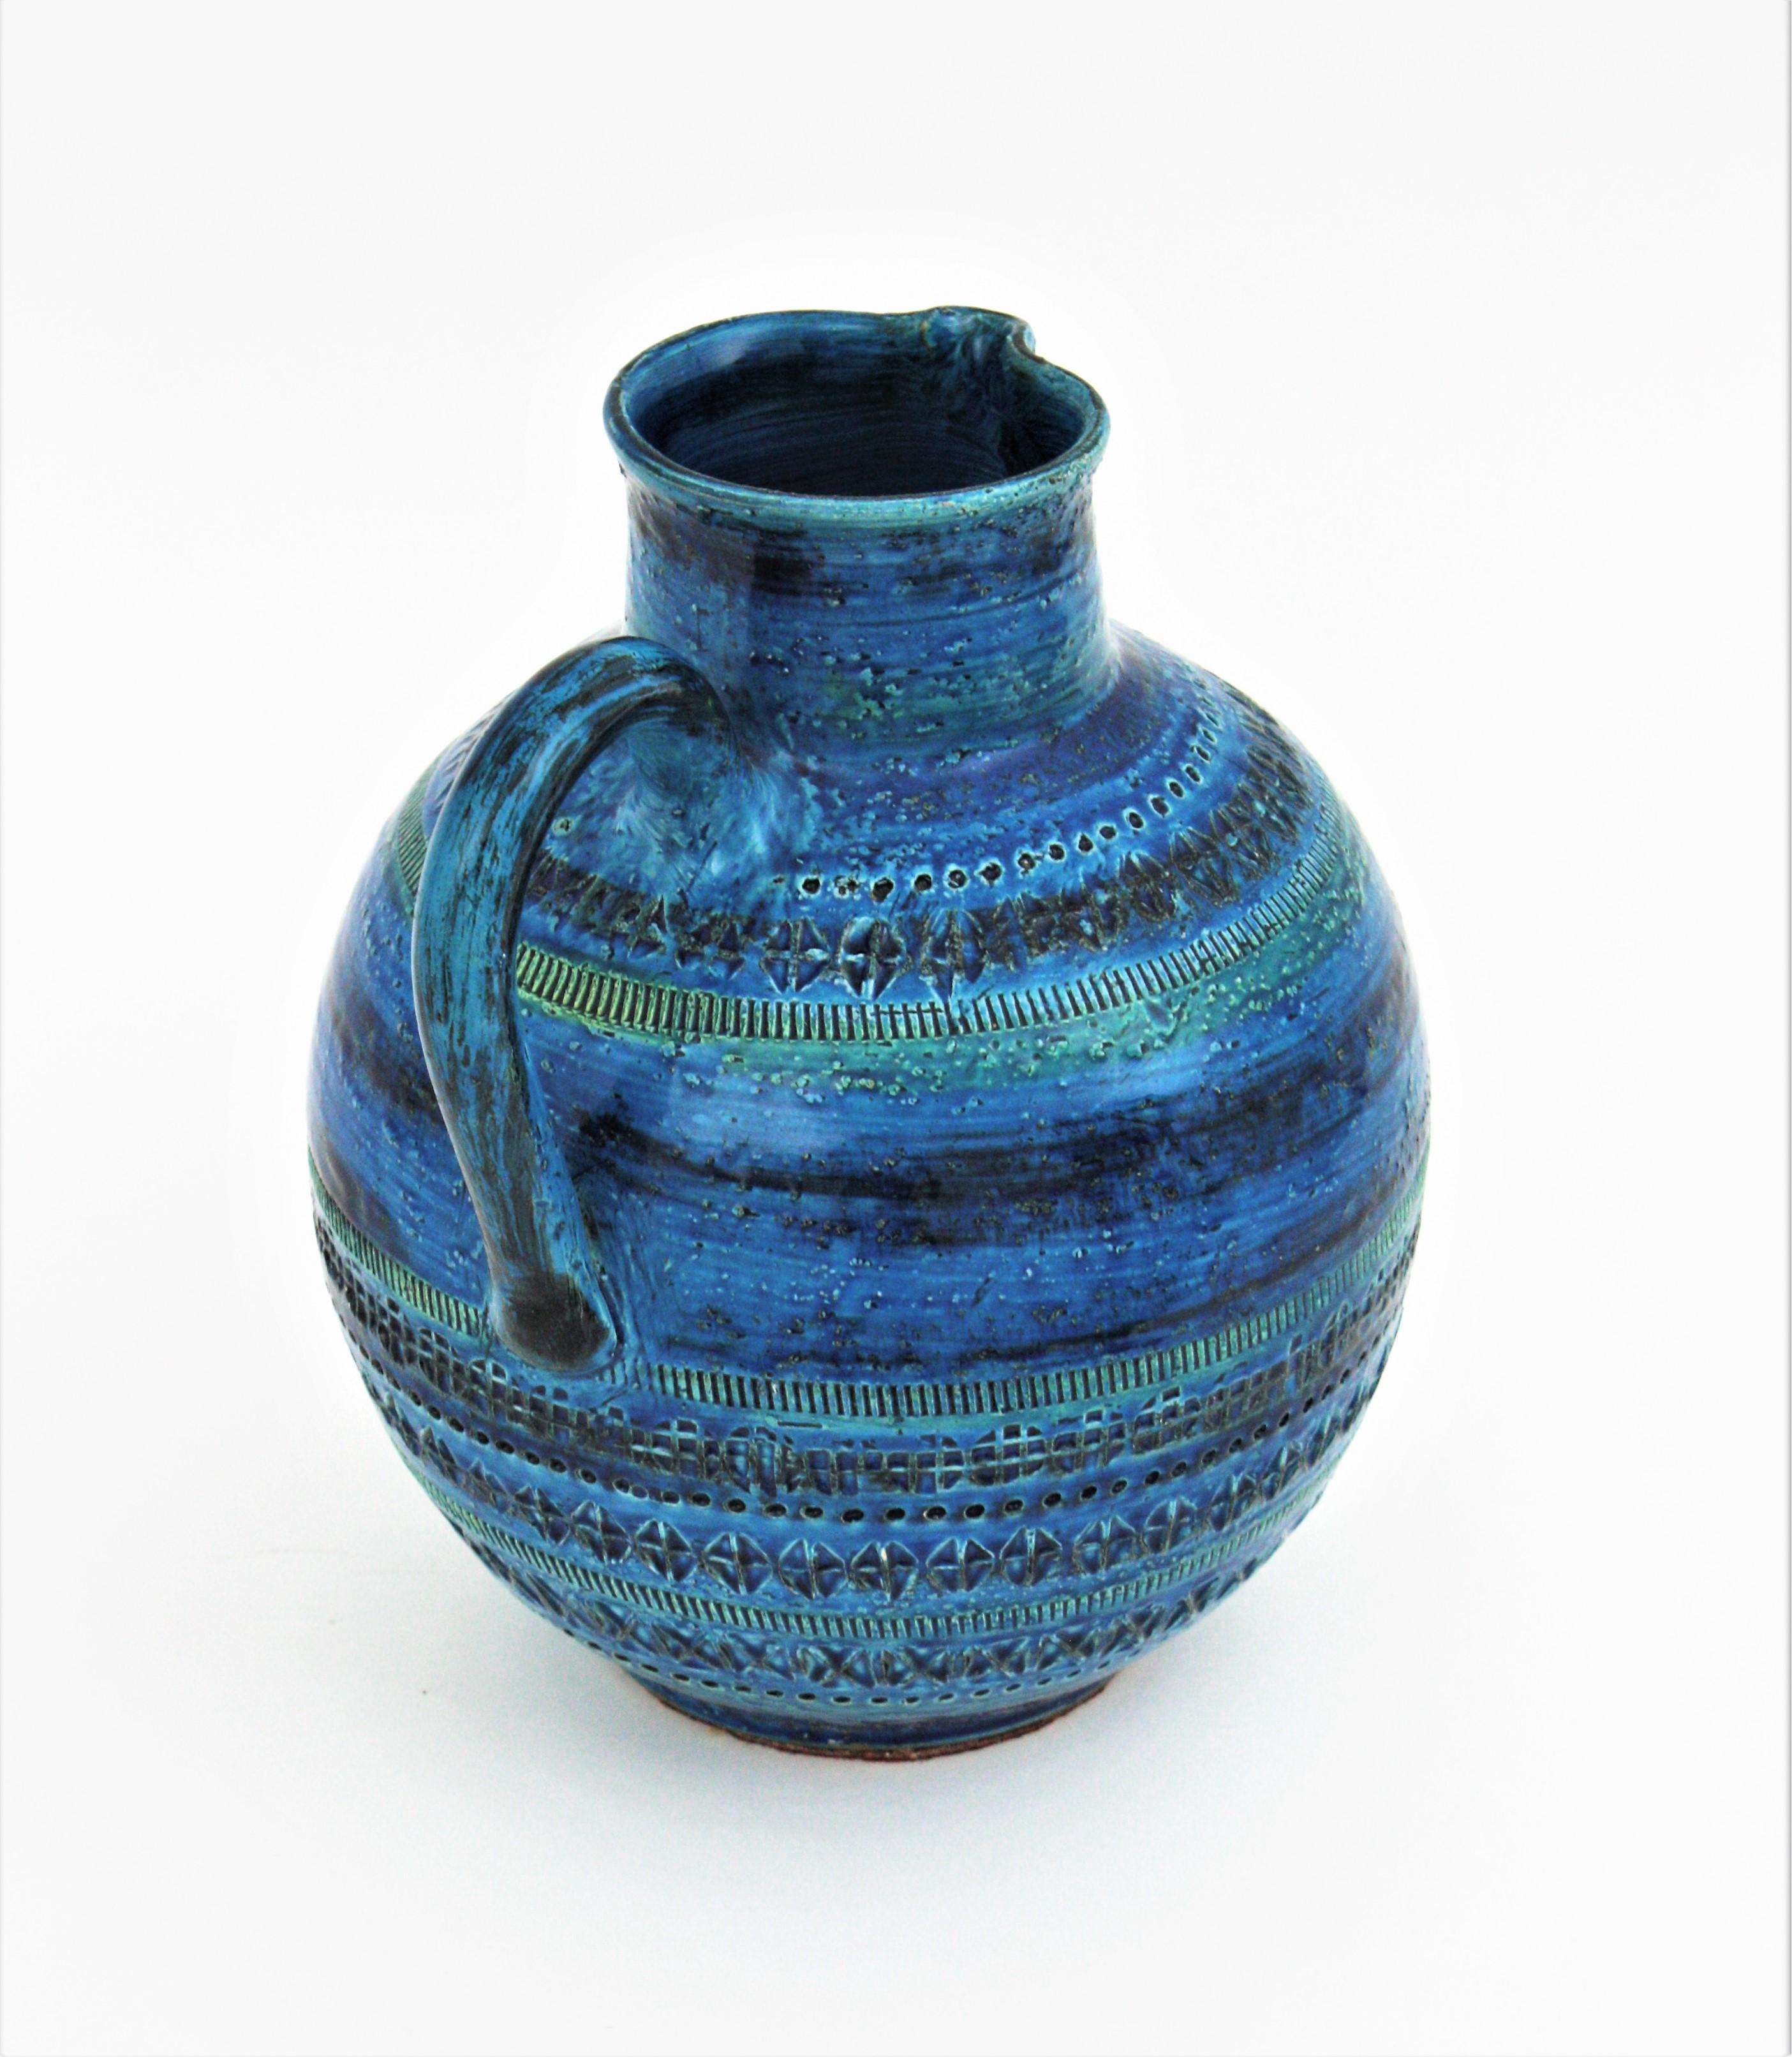 Aldo Londi Bitossi Rimini Blue  Glazed Ceramic XL Jug Vase For Sale 1